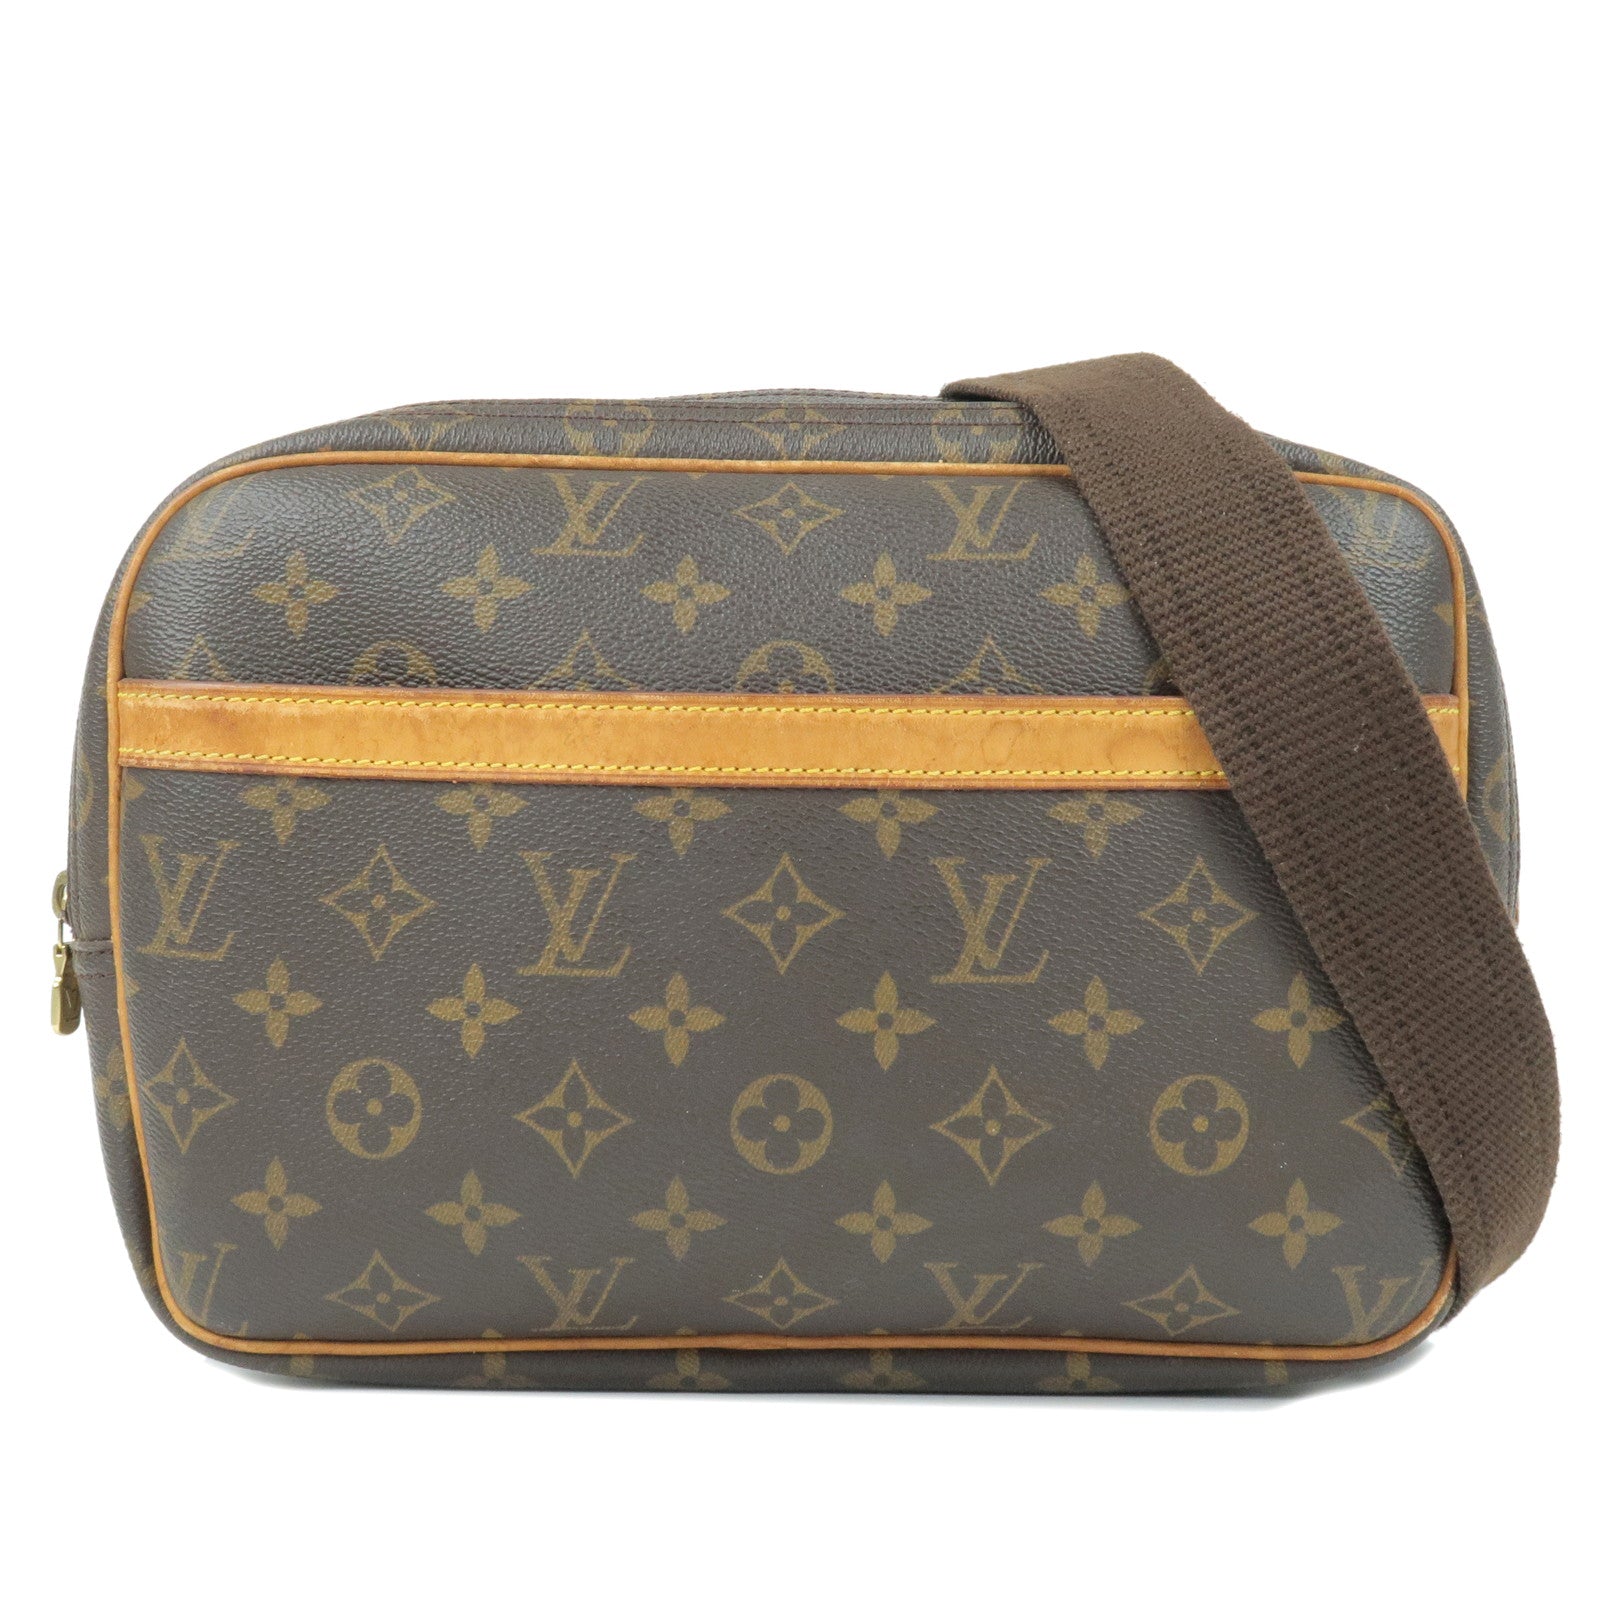 Louis Vuitton, Bags, Authentic Louis Vuitton Reporter Pm Bag